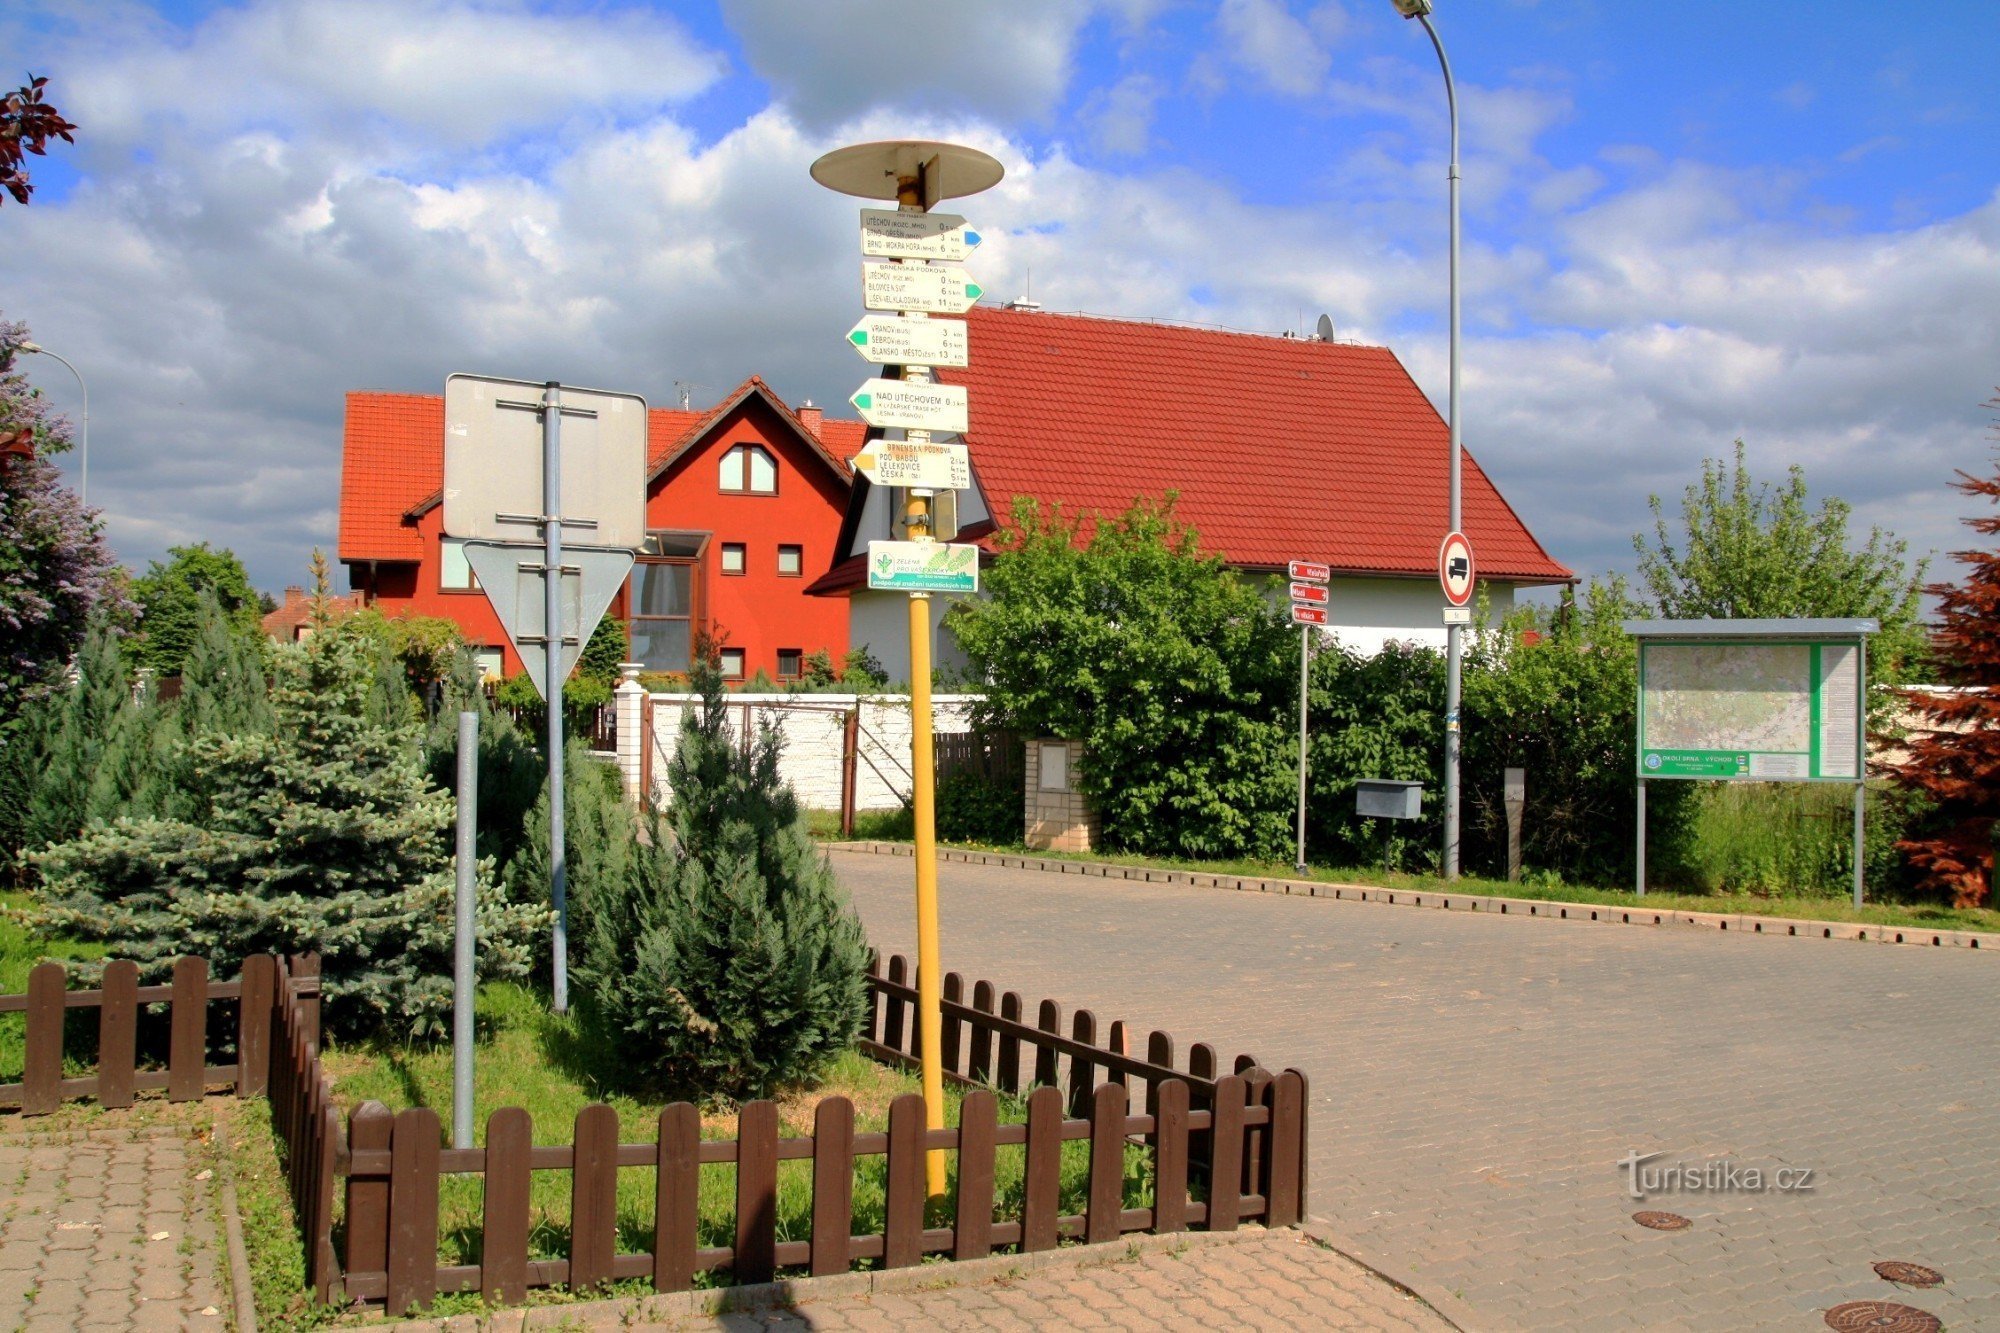 Τουριστικό σταυροδρόμι Brno-Útěchov